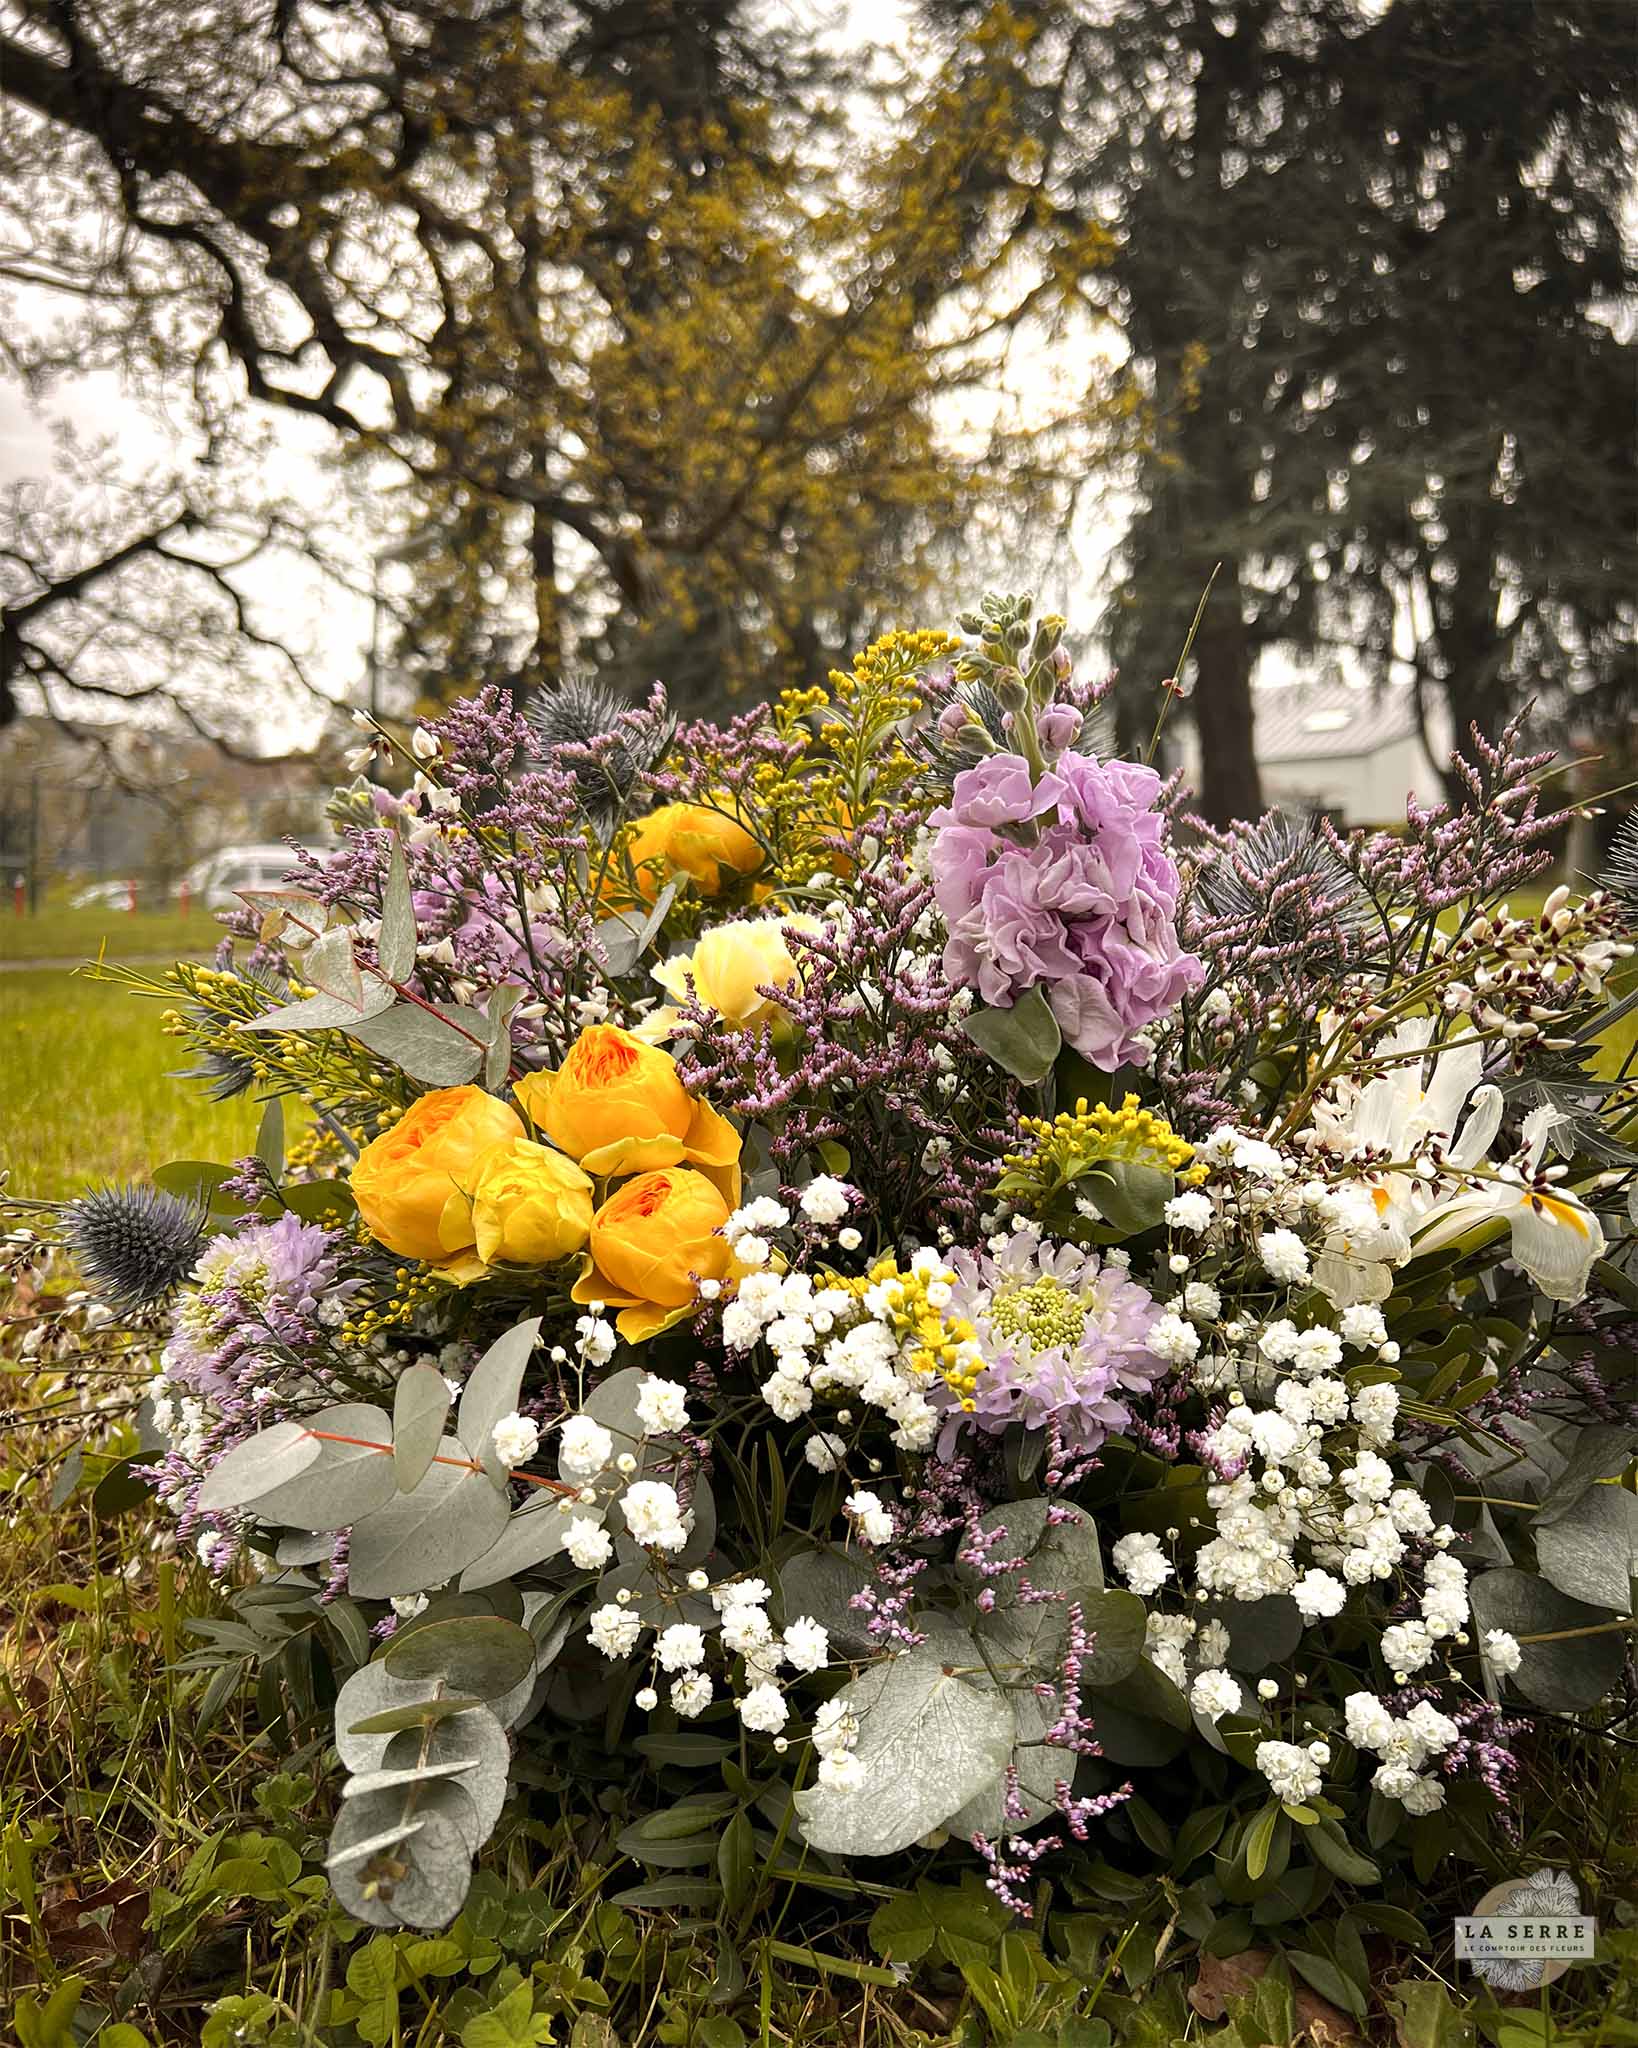 Coussin de fleurs pour des obsèques. Livraison rapide à Nantes et sa périphérie. LA SERRE fleuriste Nantes